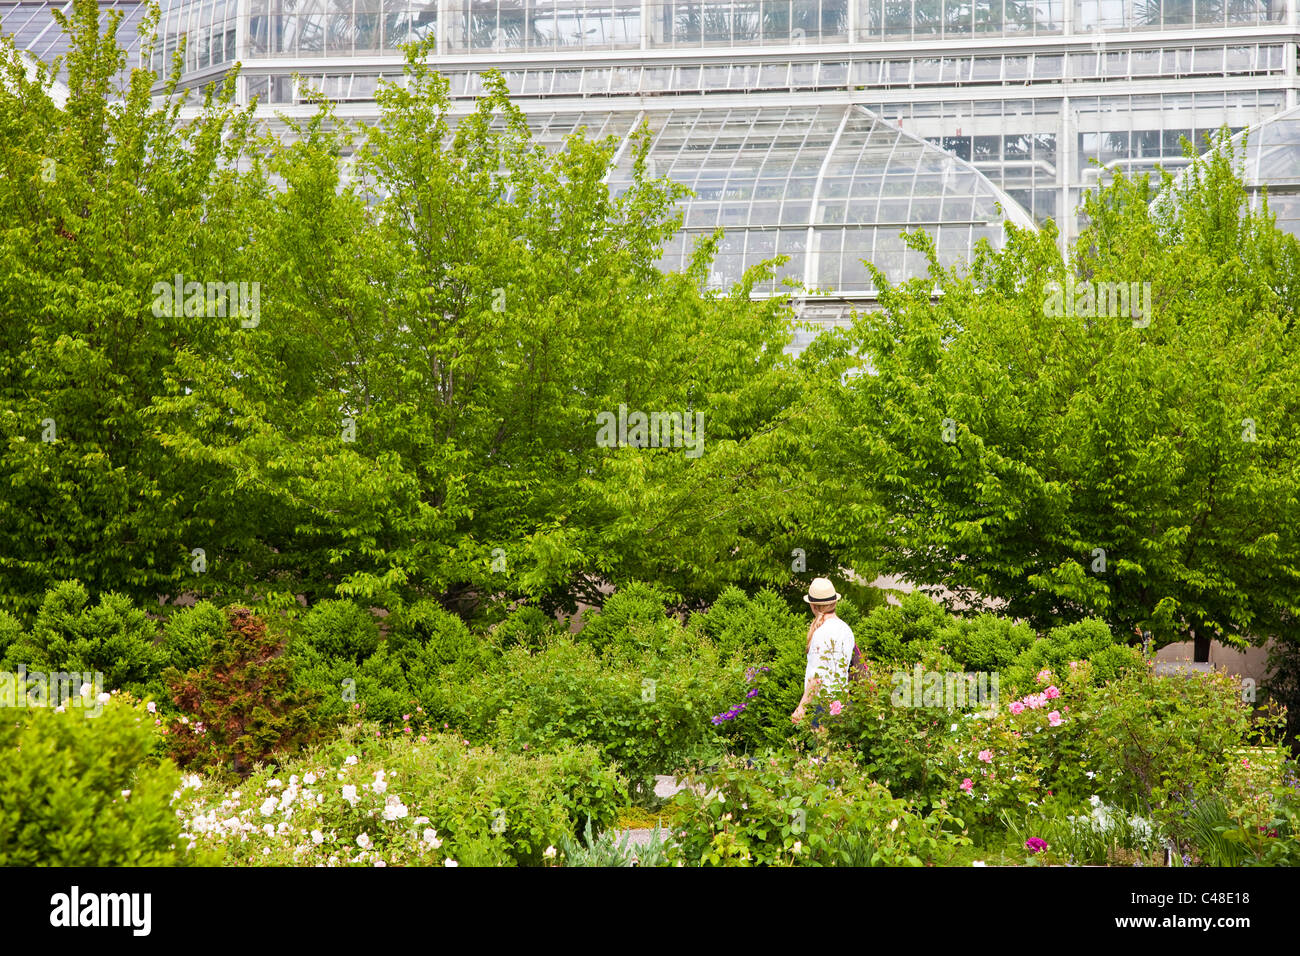 United States Botanic Garden Conservatory, Washington DC Stock Photo